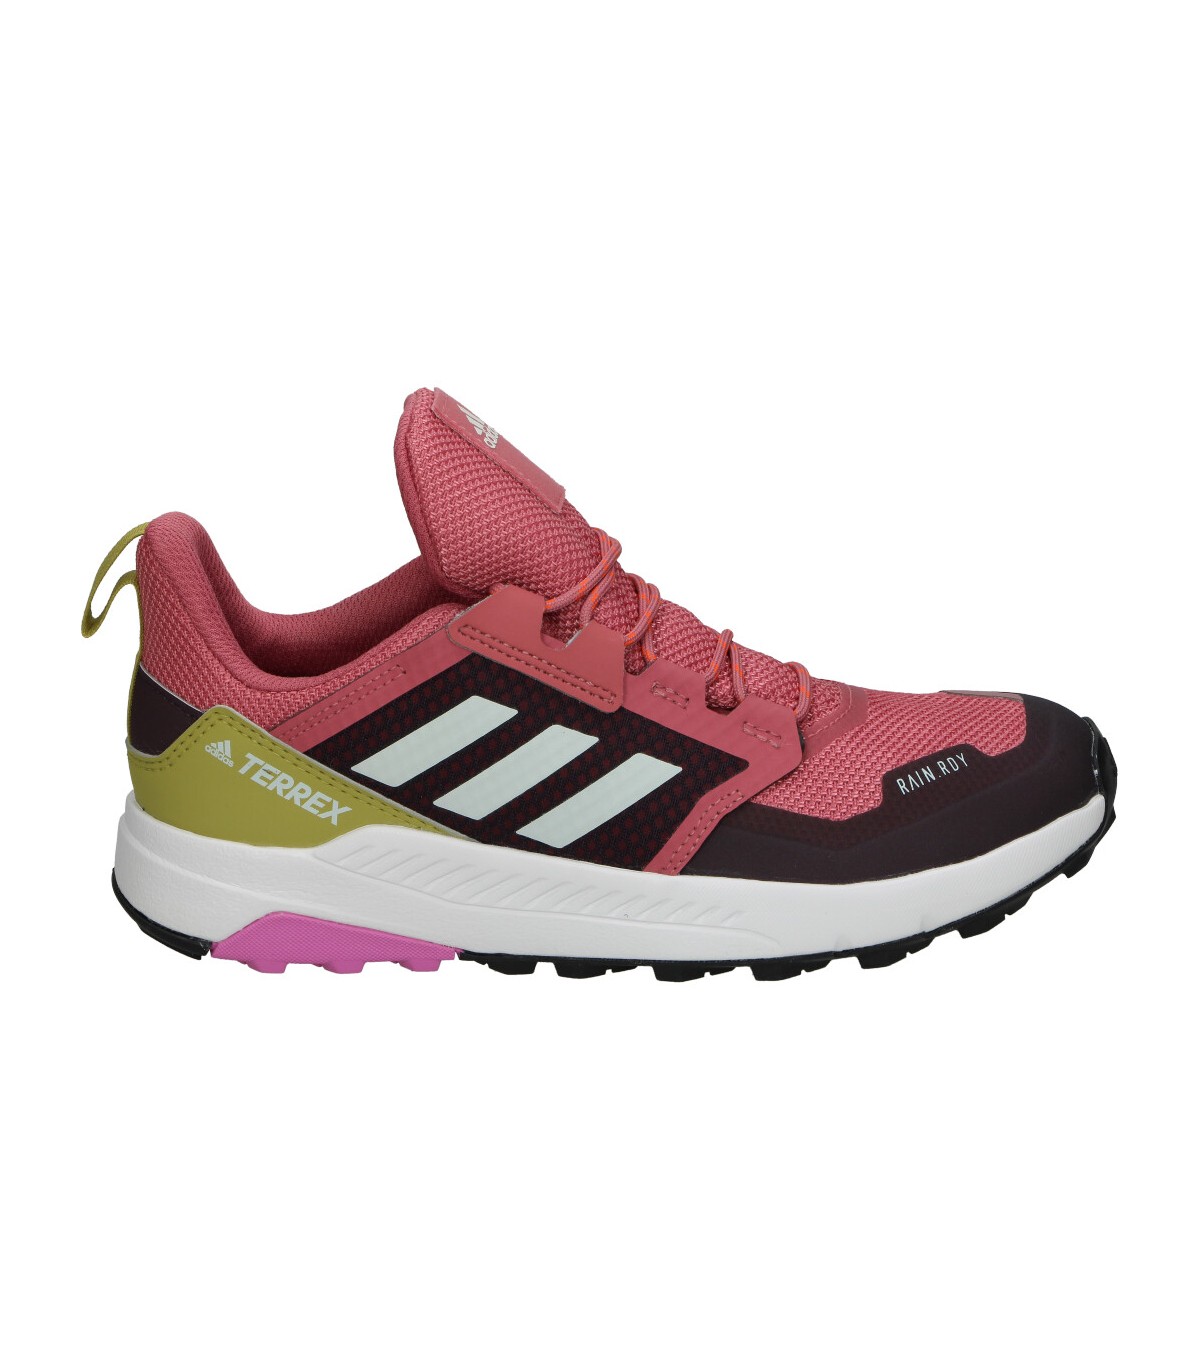 Alboroto proposición Semicírculo Zapatillas deportivas cómodo de mujer ADIDAS gz1166 color rosa